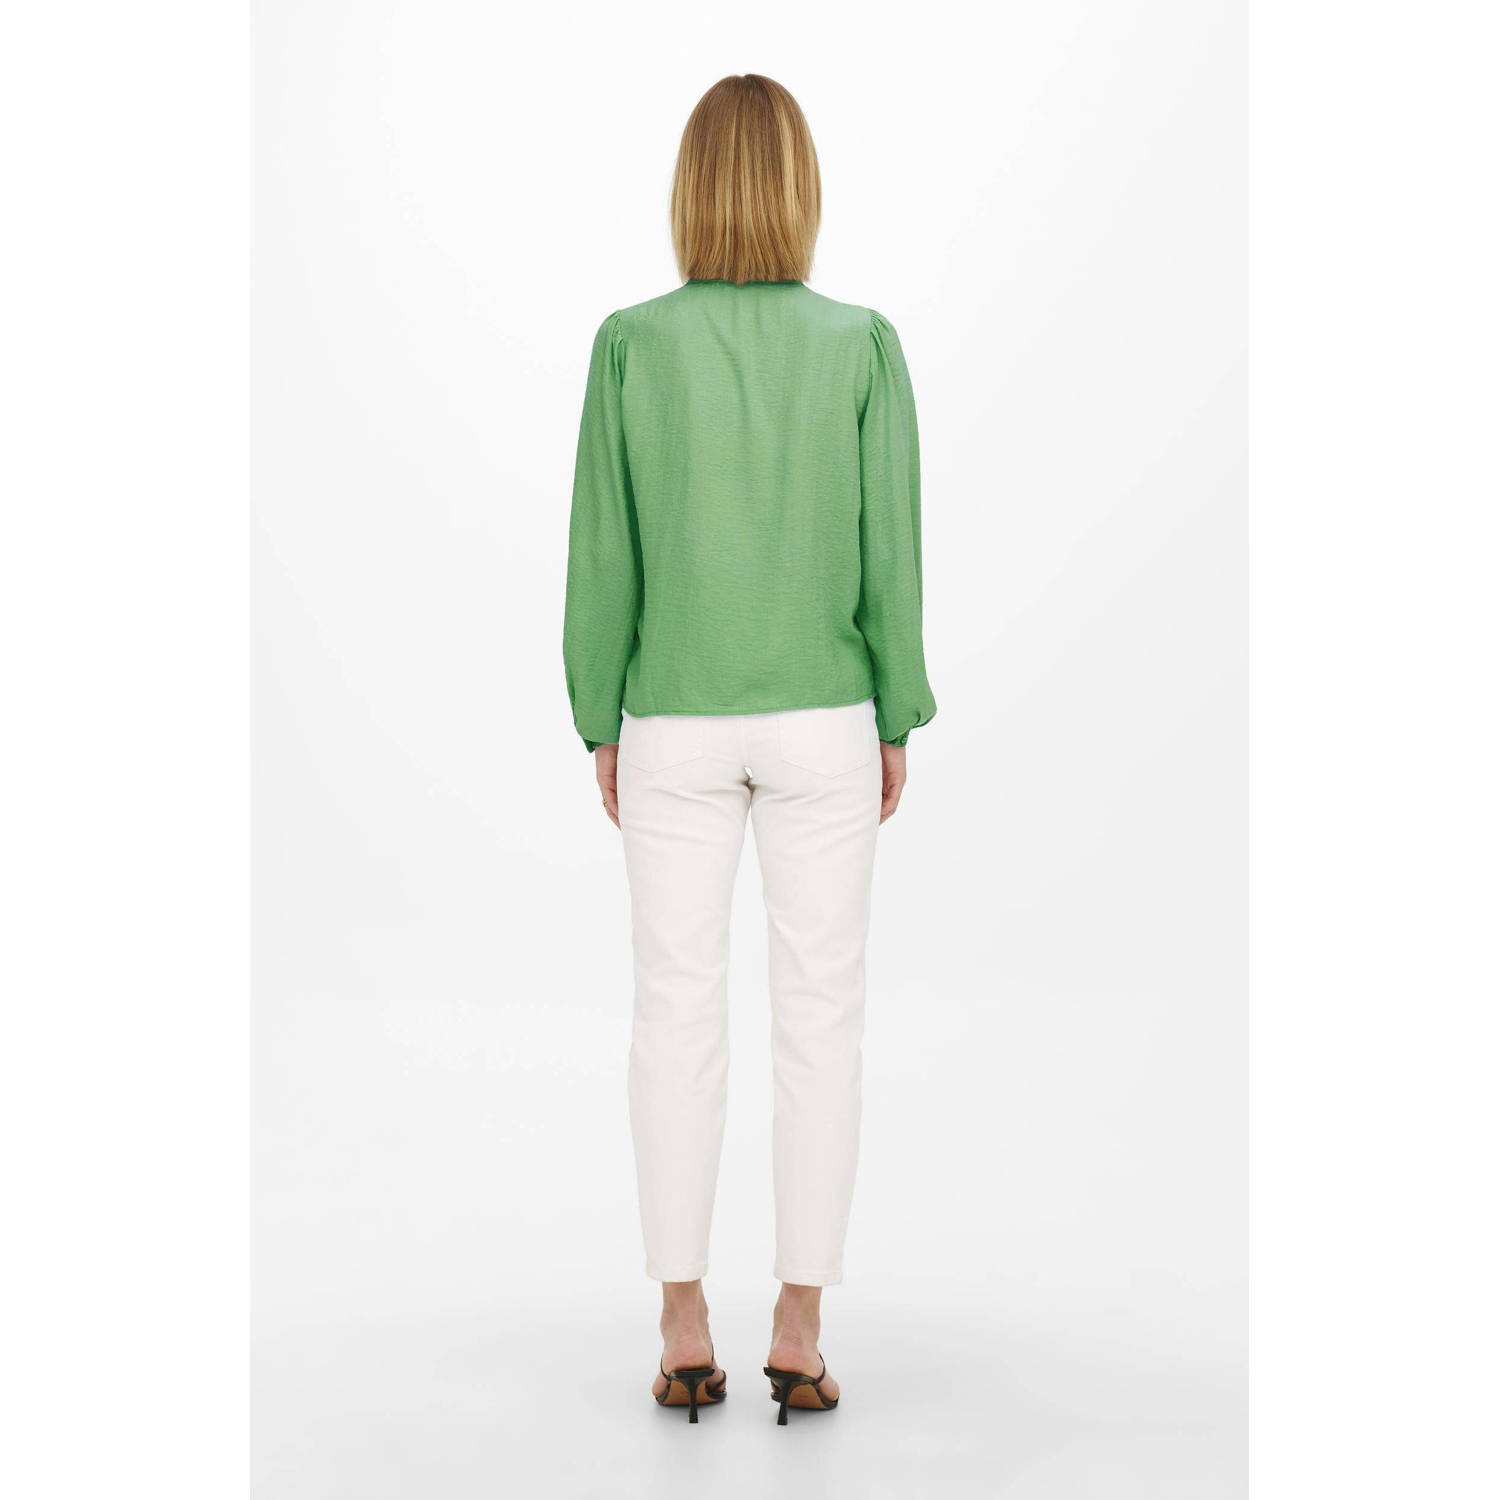 JDY blouse met kant groen